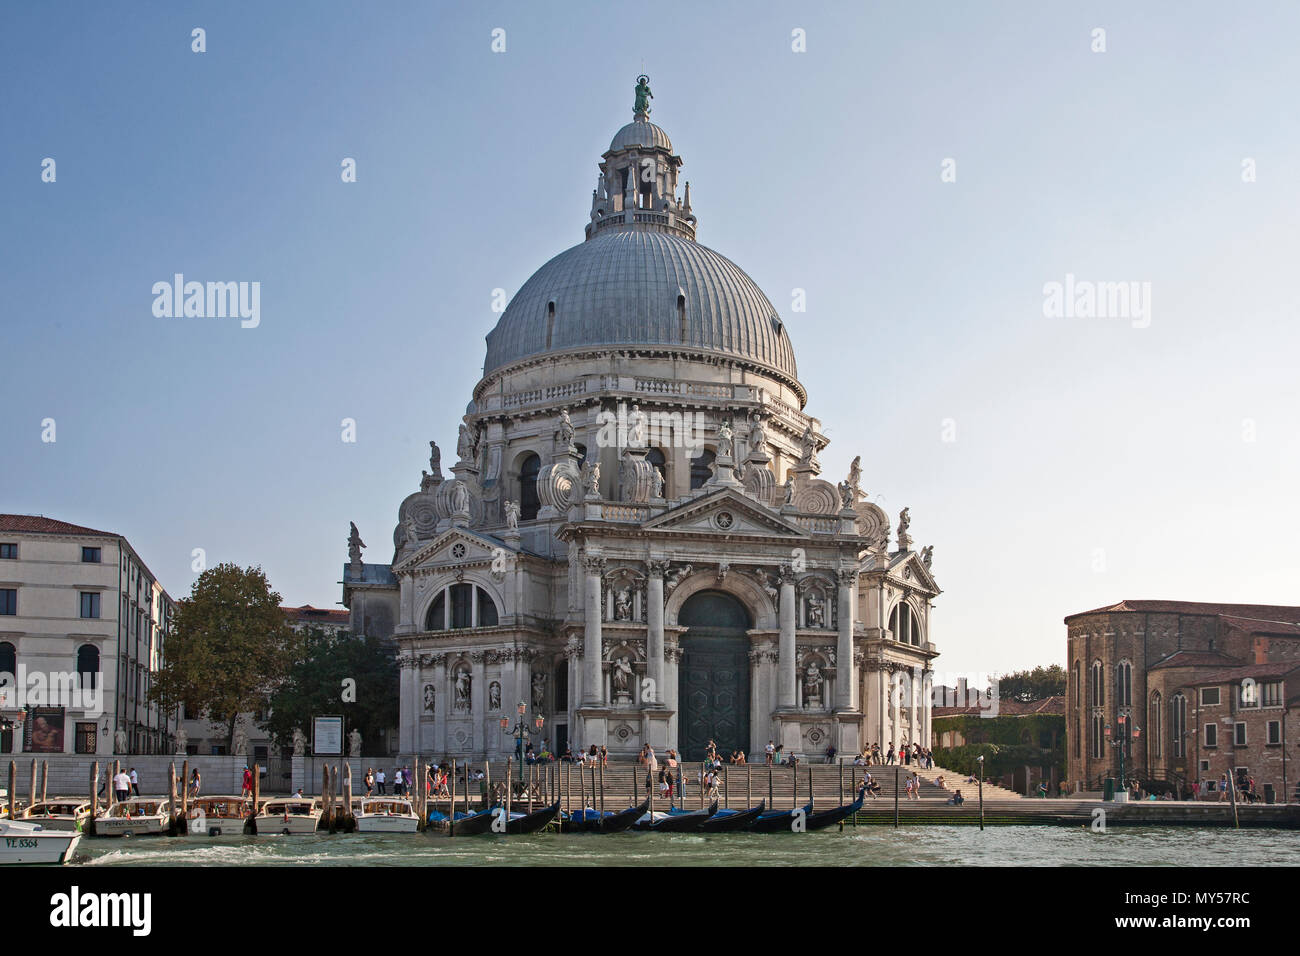 August 27, 2014 - Venedig, Italien: die Kuppel der Kathedrale Sehenswürdigkeit alute' in Italien mit Wassertaxis Stockfoto